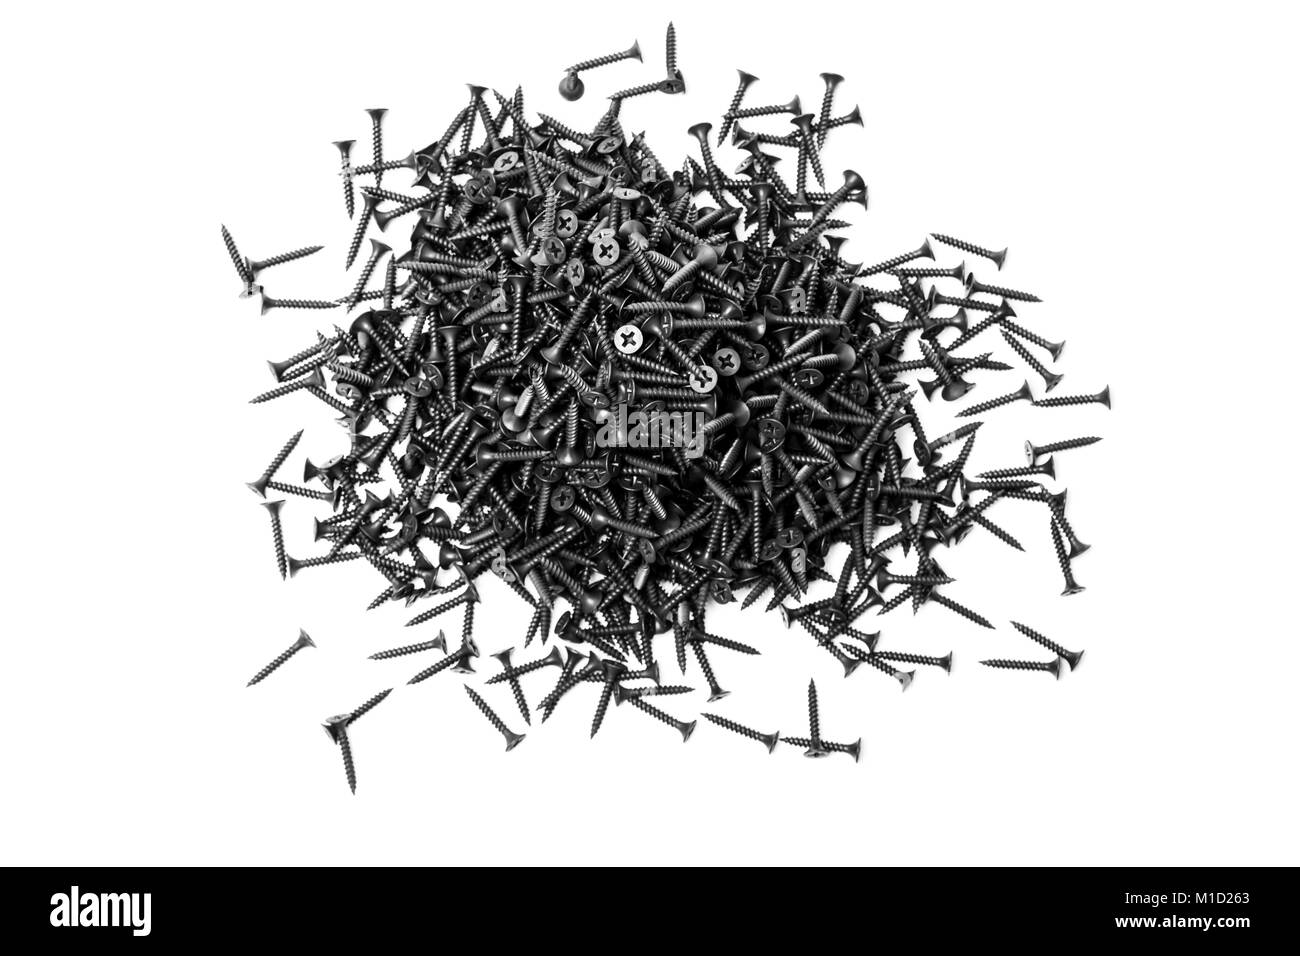 Gruppe von schwarzen Schrauben für die Befestigung von Gipskartonplatten auf Metallprofilen, Buchstabe A graviert Stockfoto